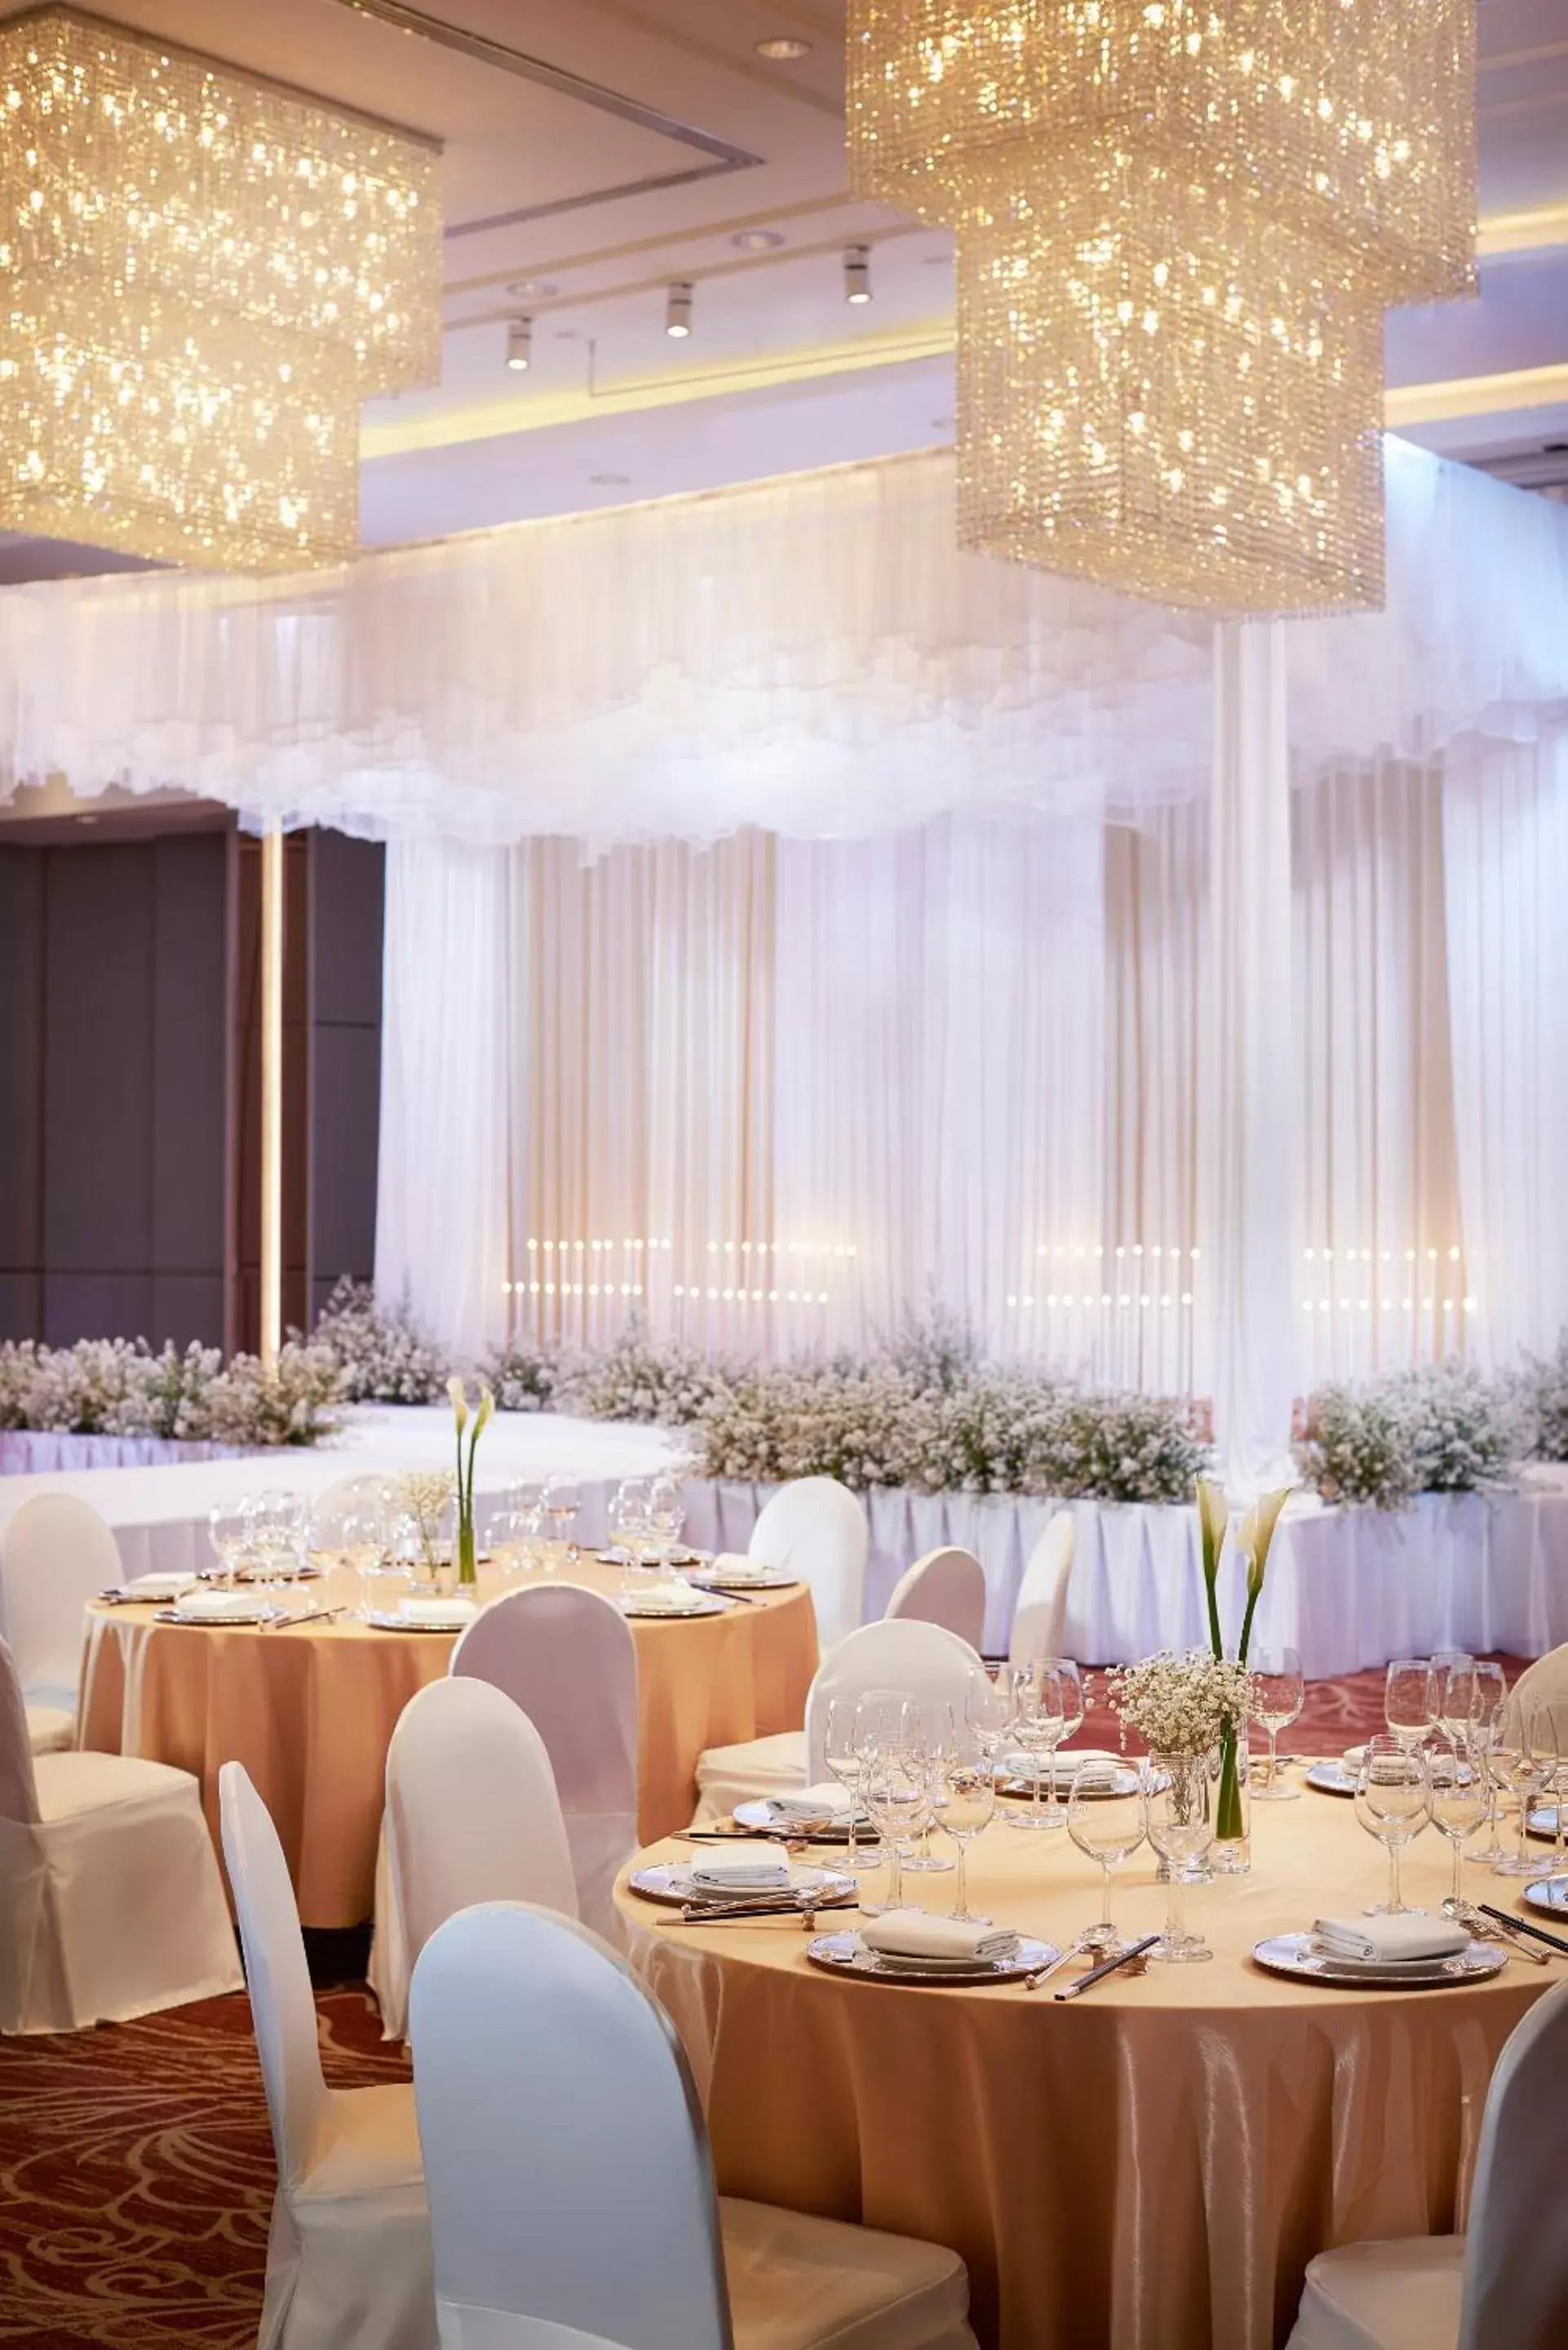 Banquet/Function facilities, Banquet Facilities in Amari Don Muang Airport Bangkok